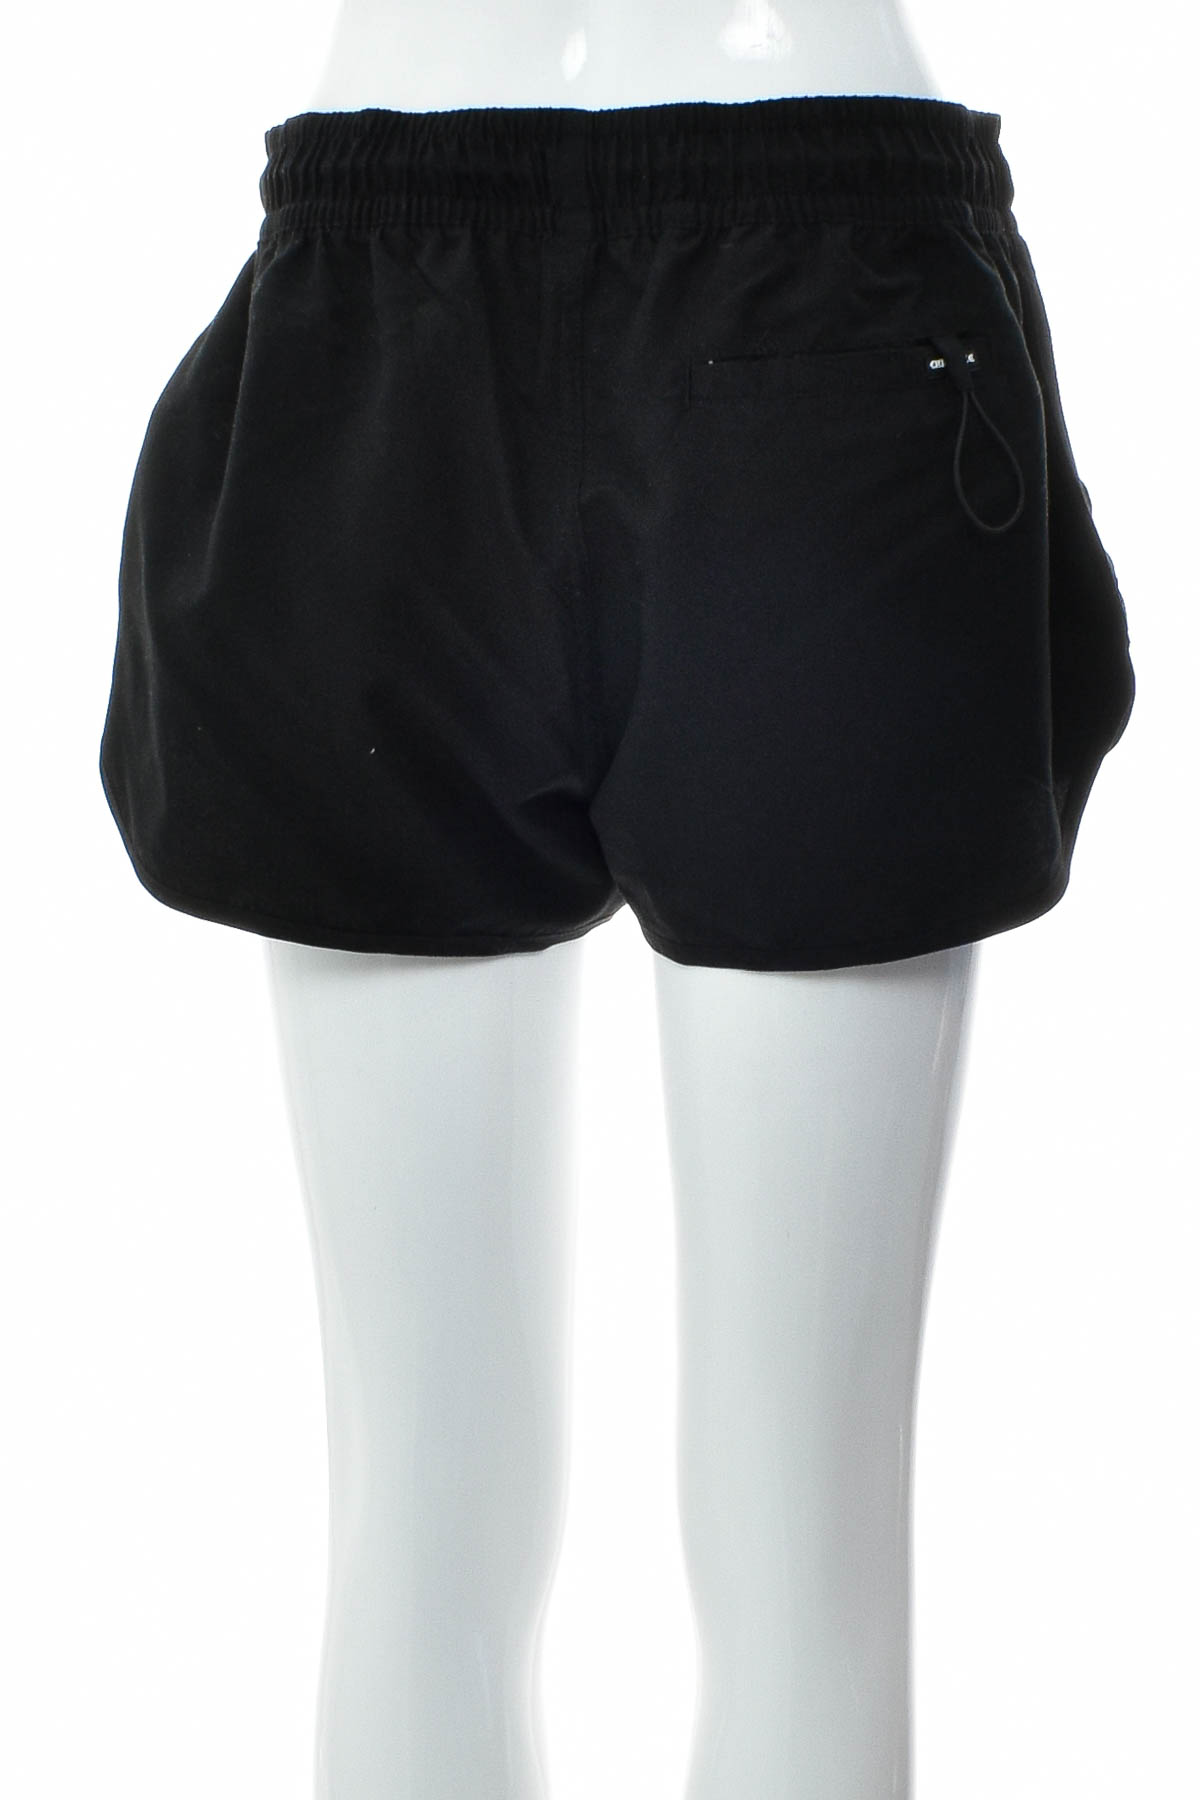 Women's shorts - Chiemsee - 1